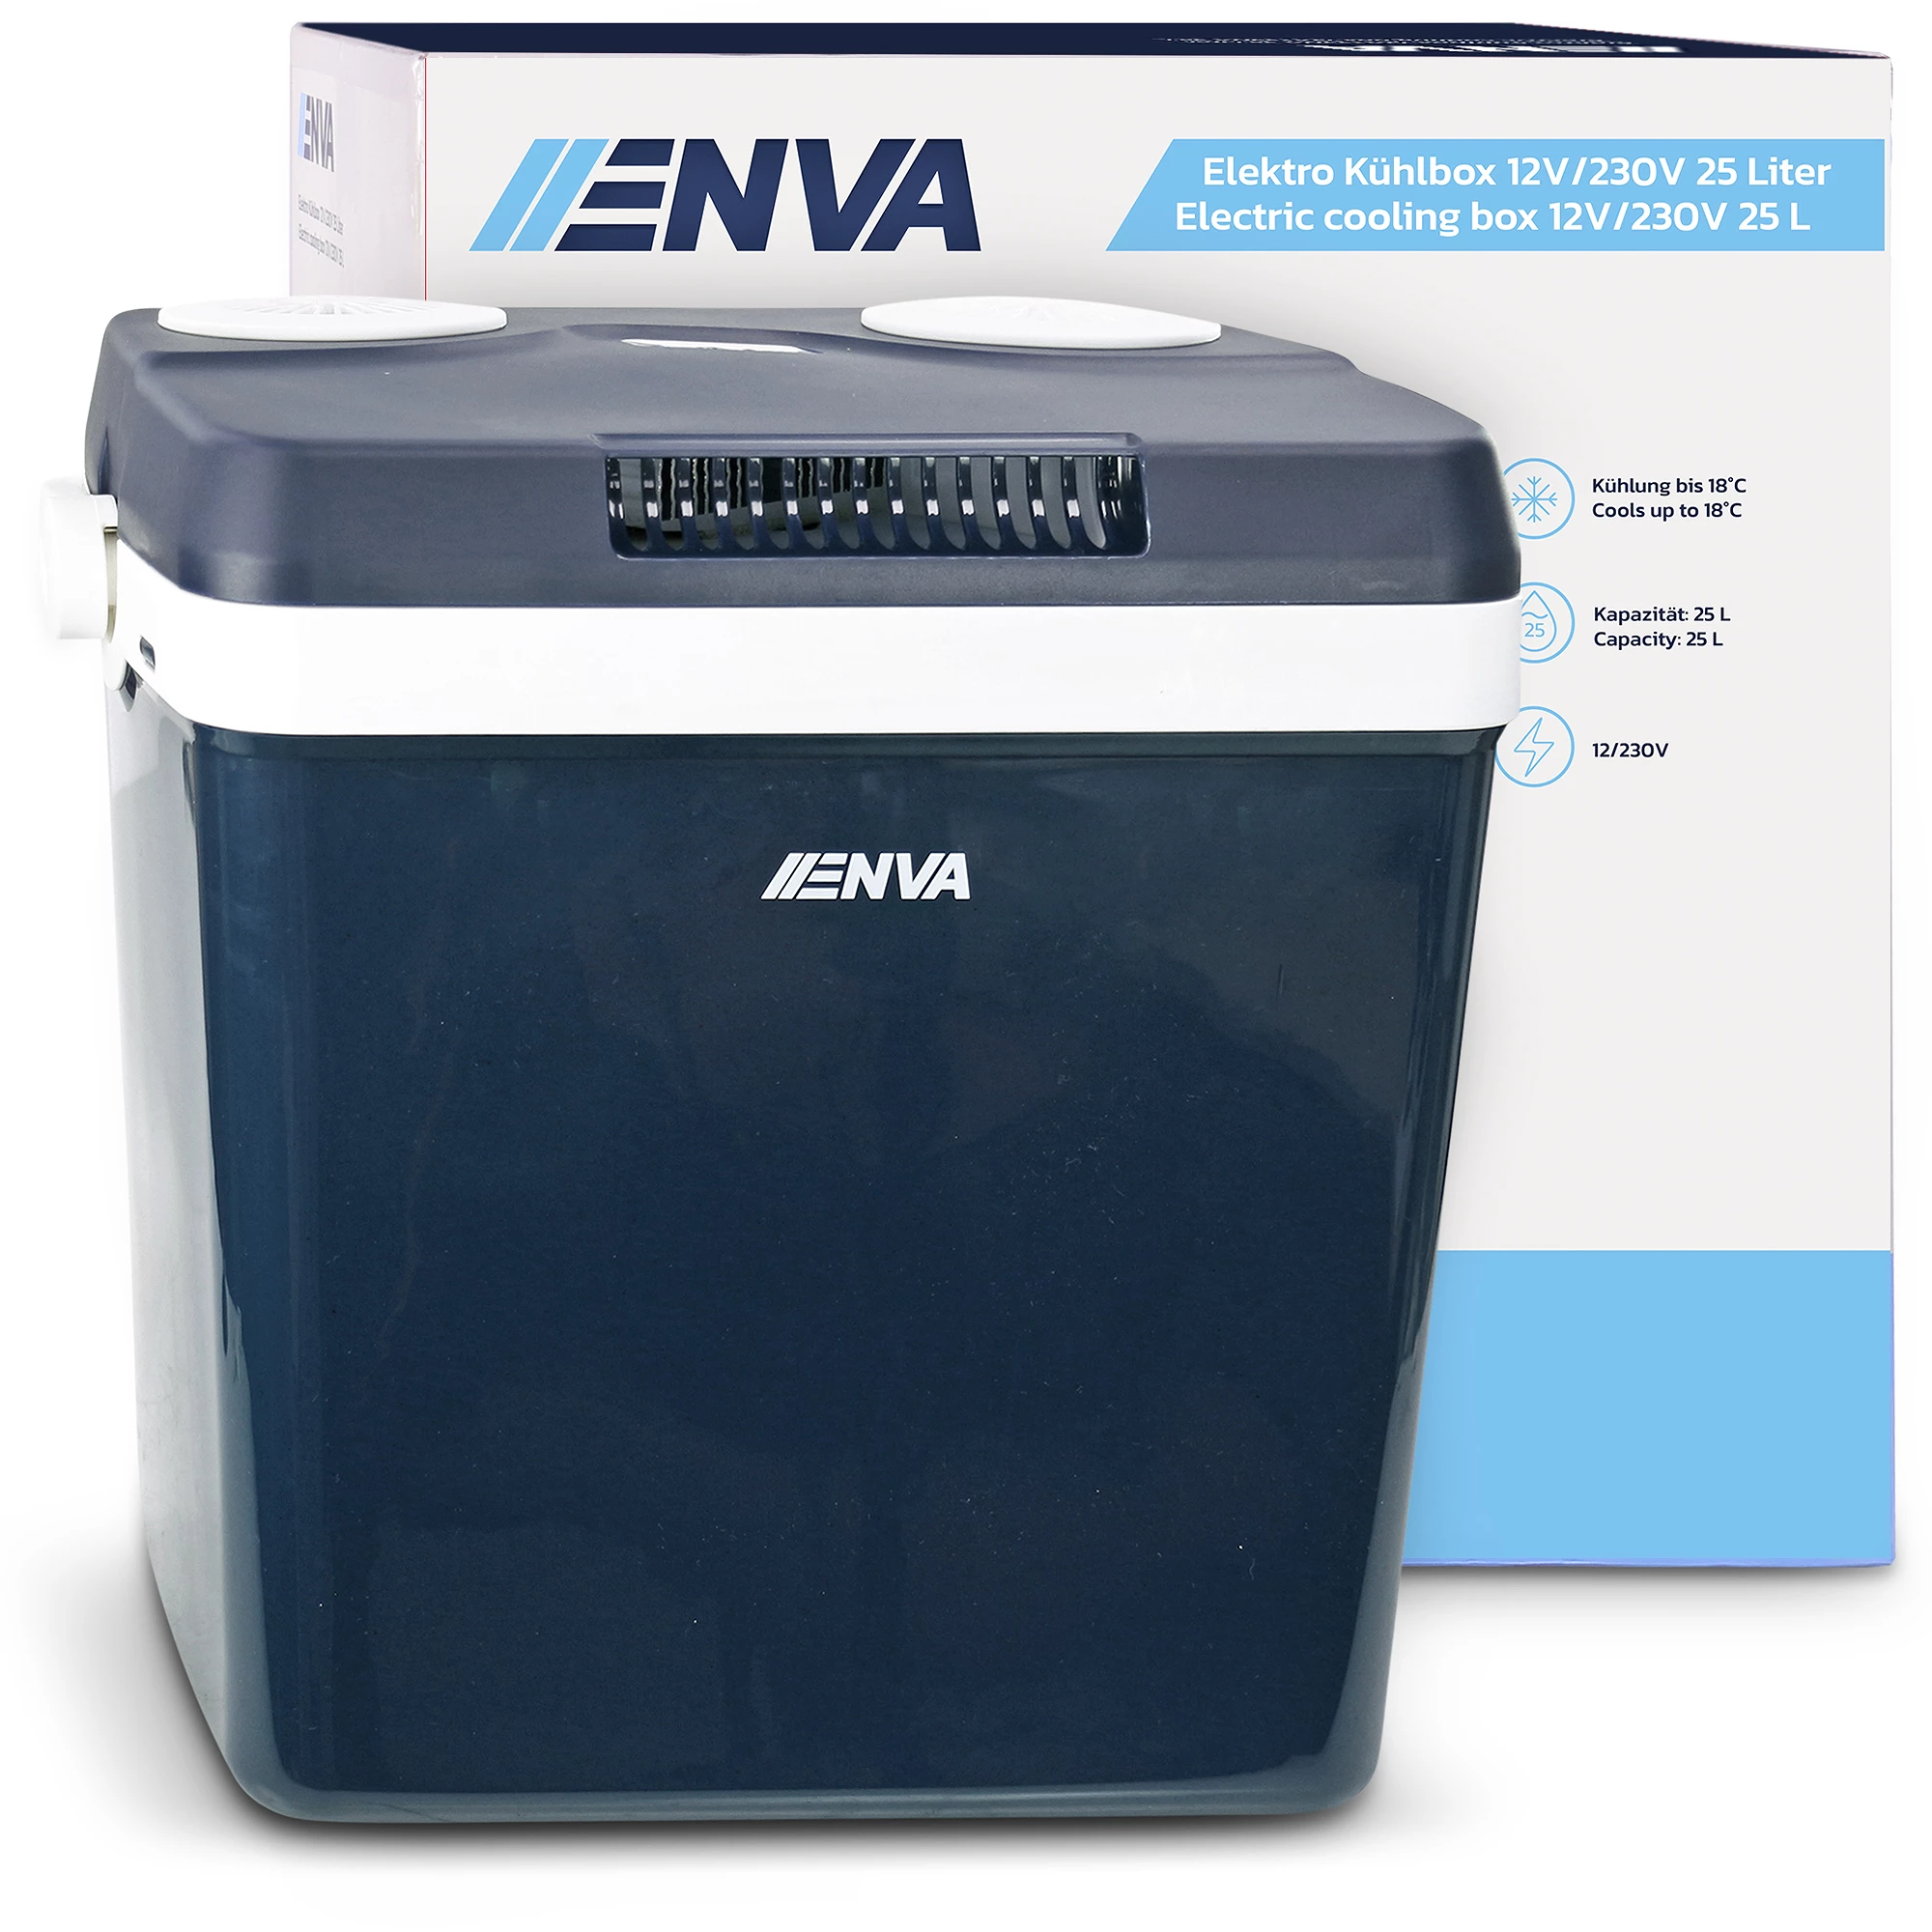 Enva Elektro Kühlbox 12V/230V 25 Liter 10811278 günstig online kaufen